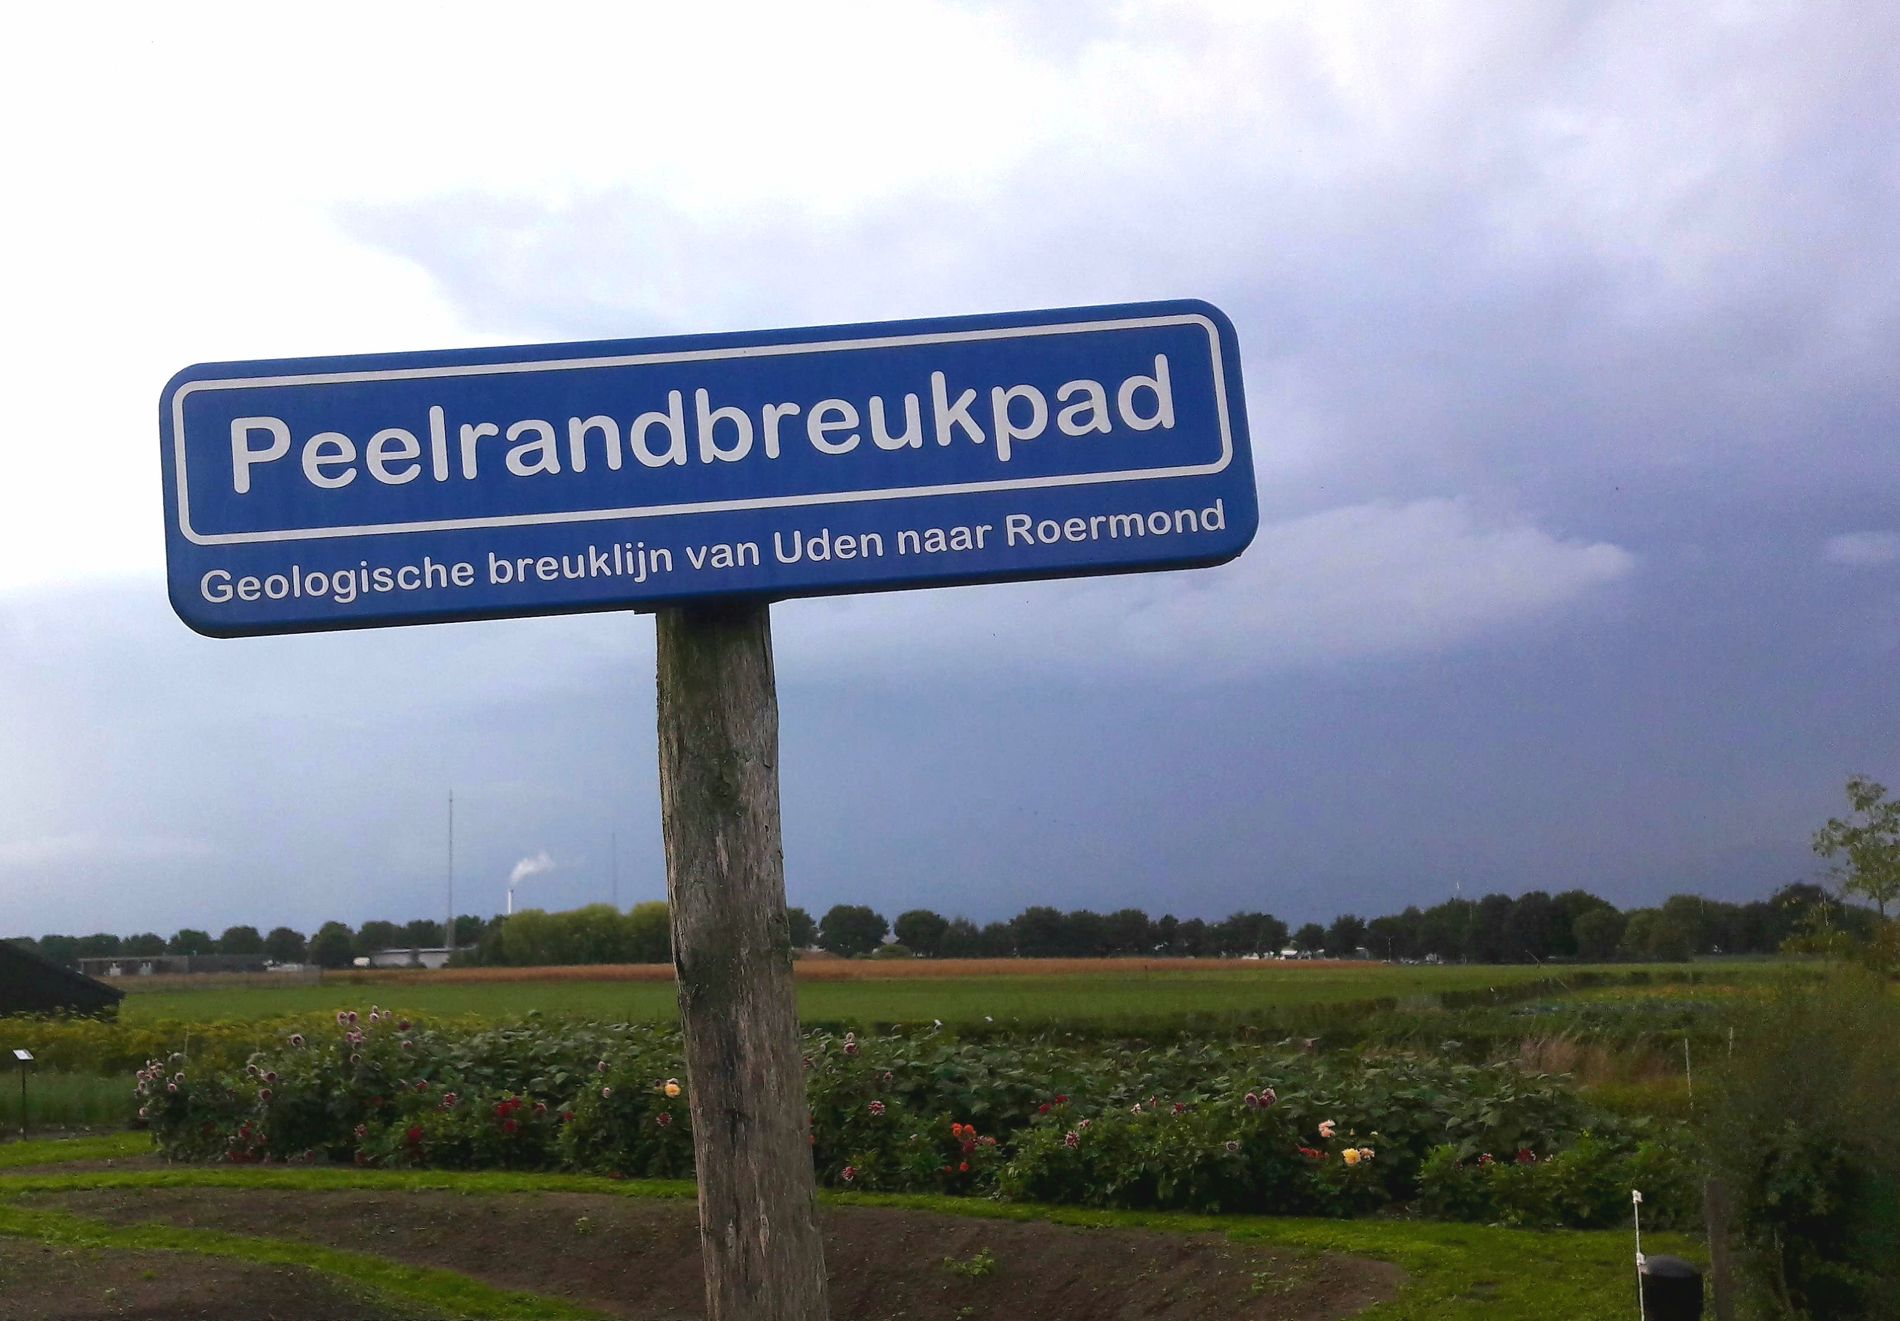 Path of the Peelrandbreuk in the garden of Bijzonder Brabants